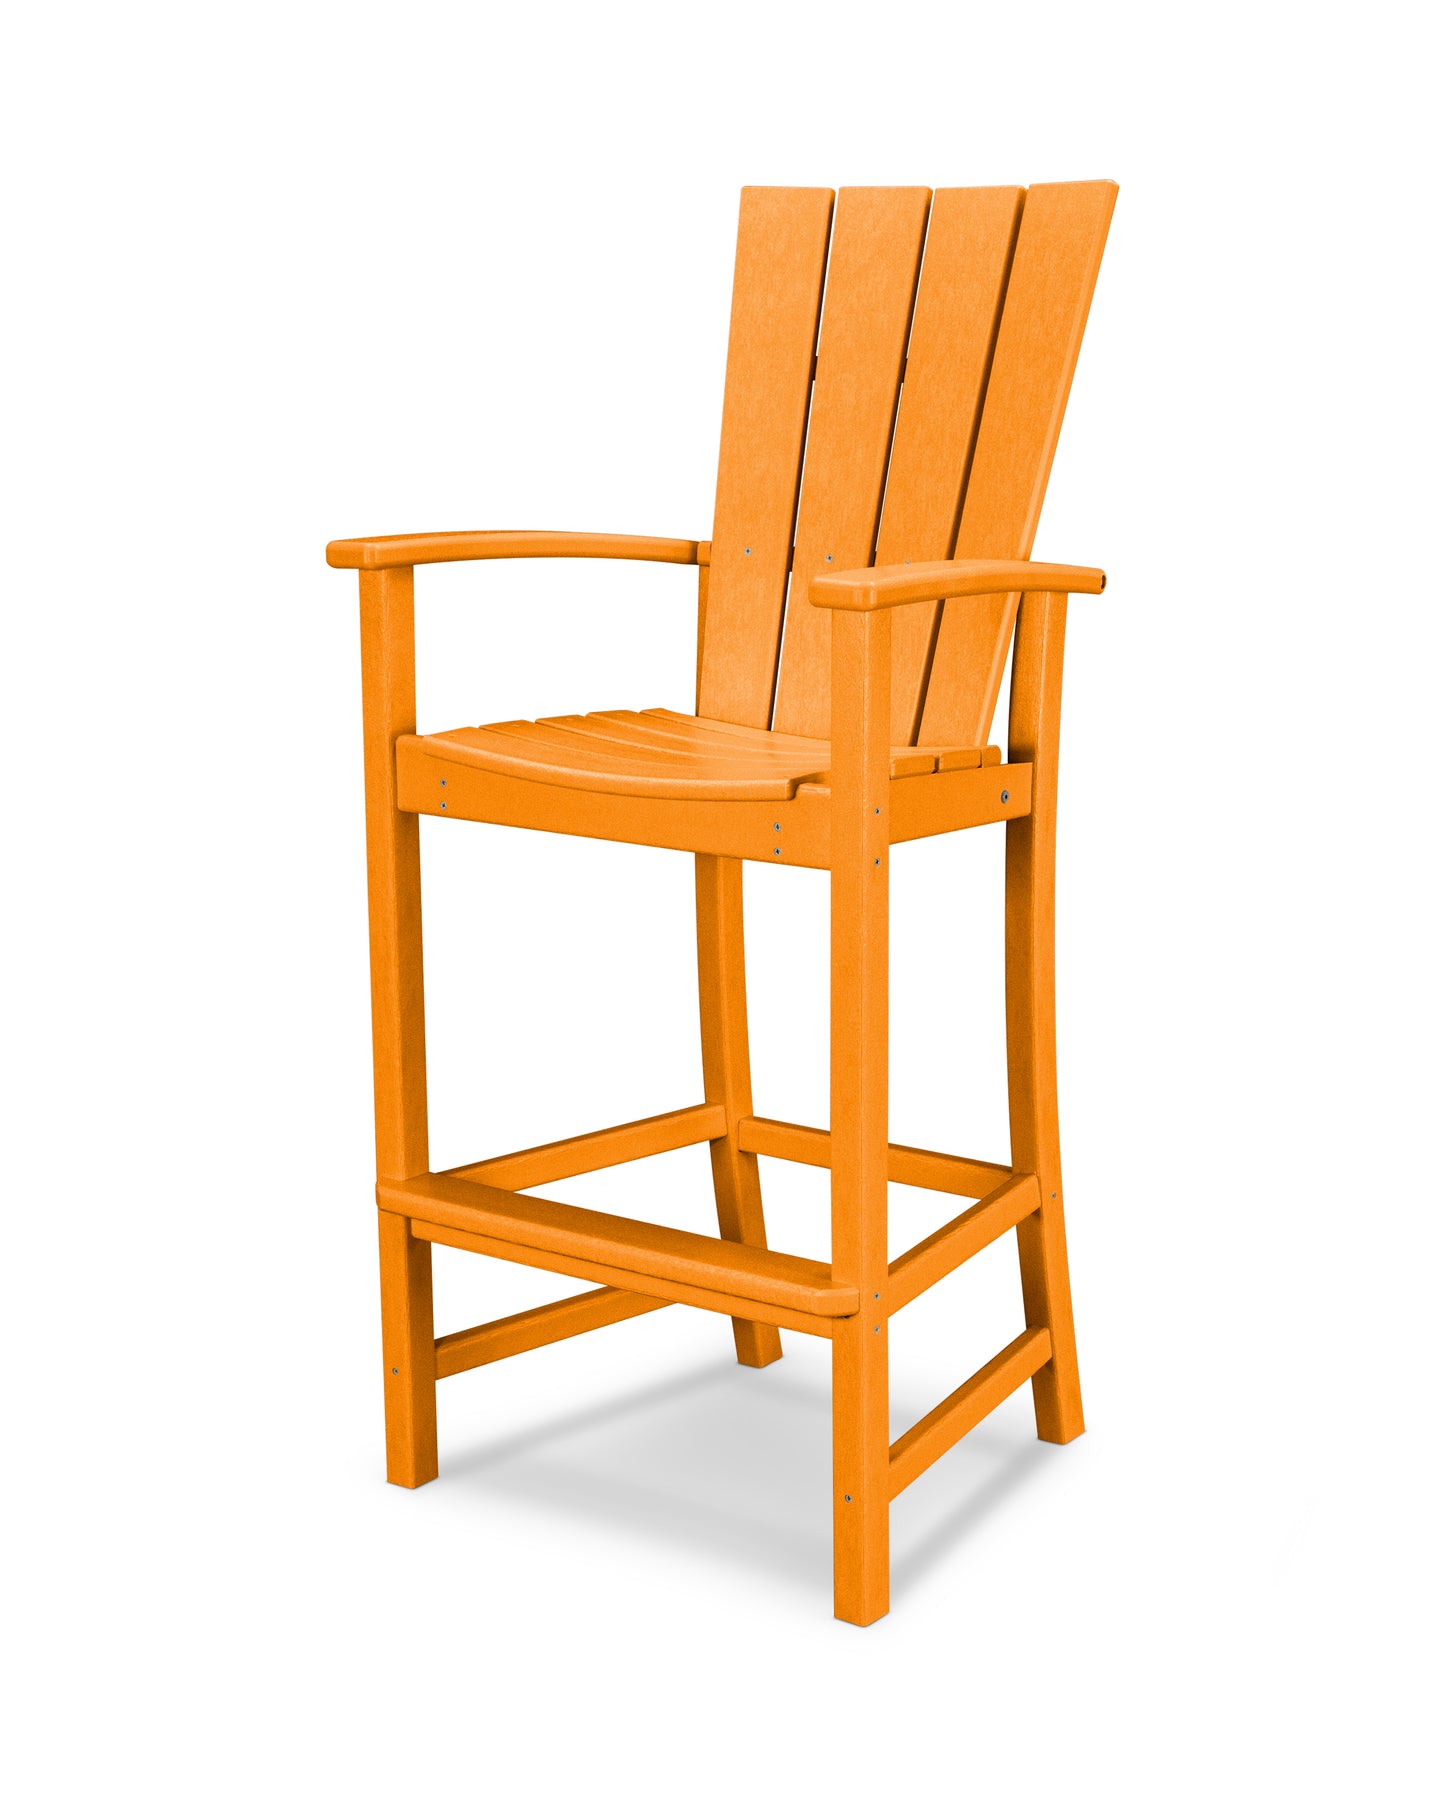 Quattro Adirondack Bar Chair